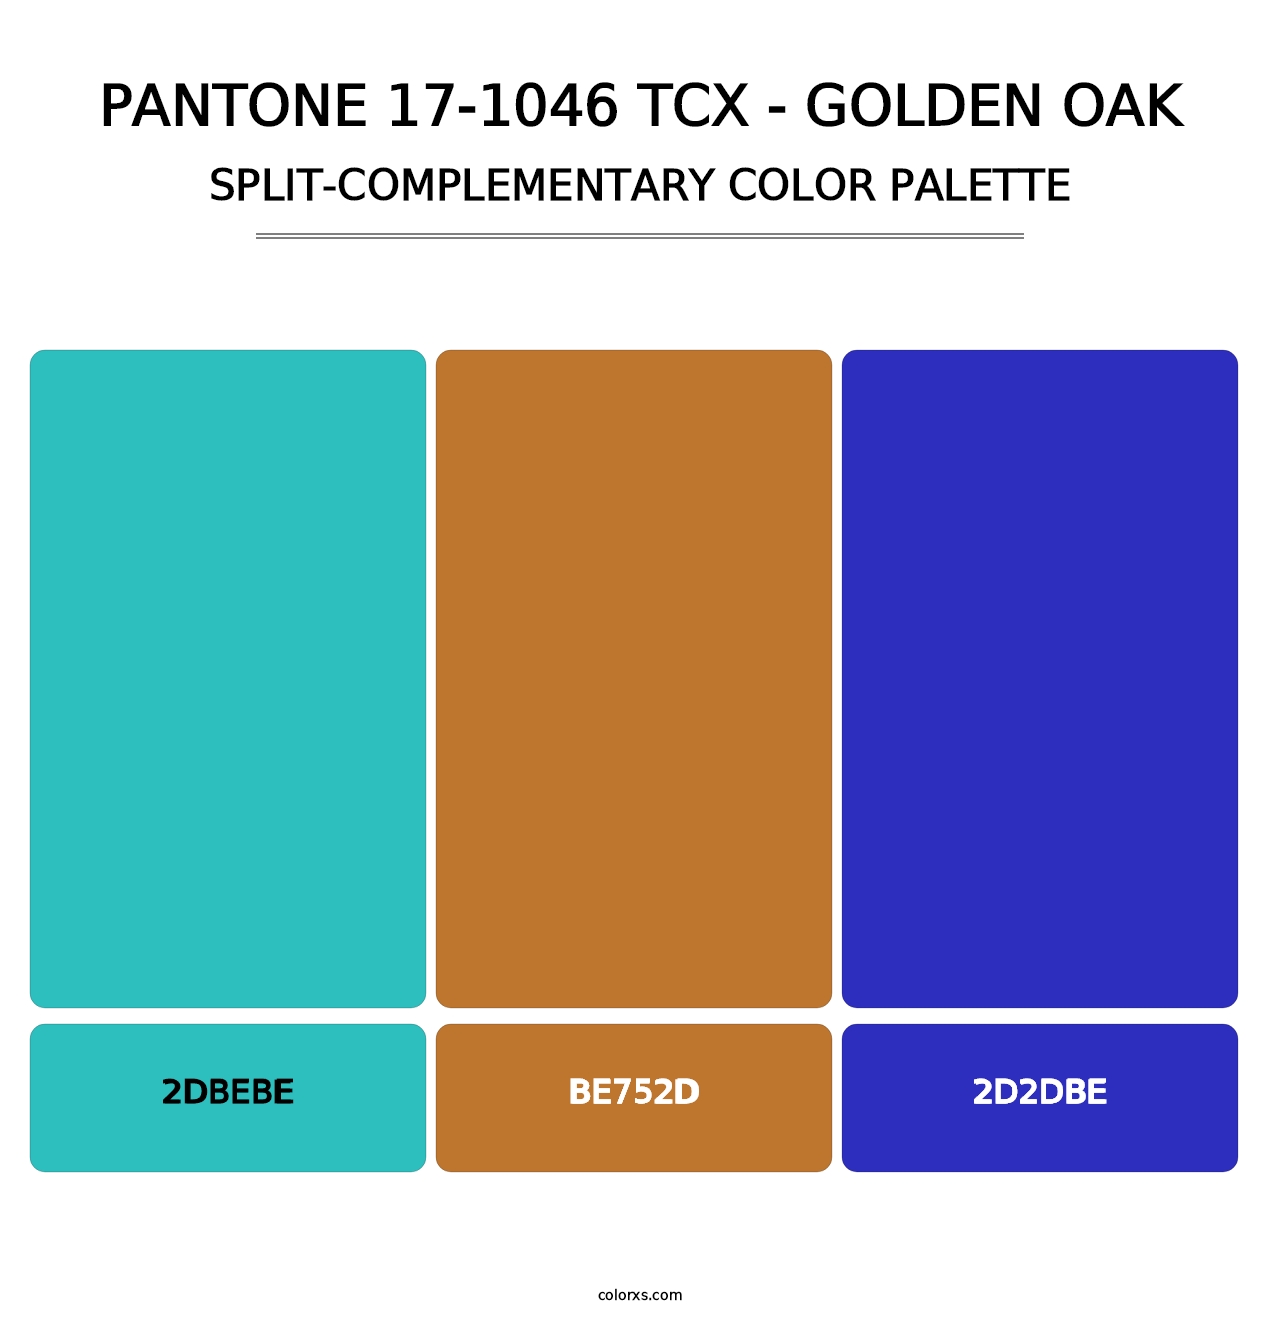 PANTONE 17-1046 TCX - Golden Oak - Split-Complementary Color Palette